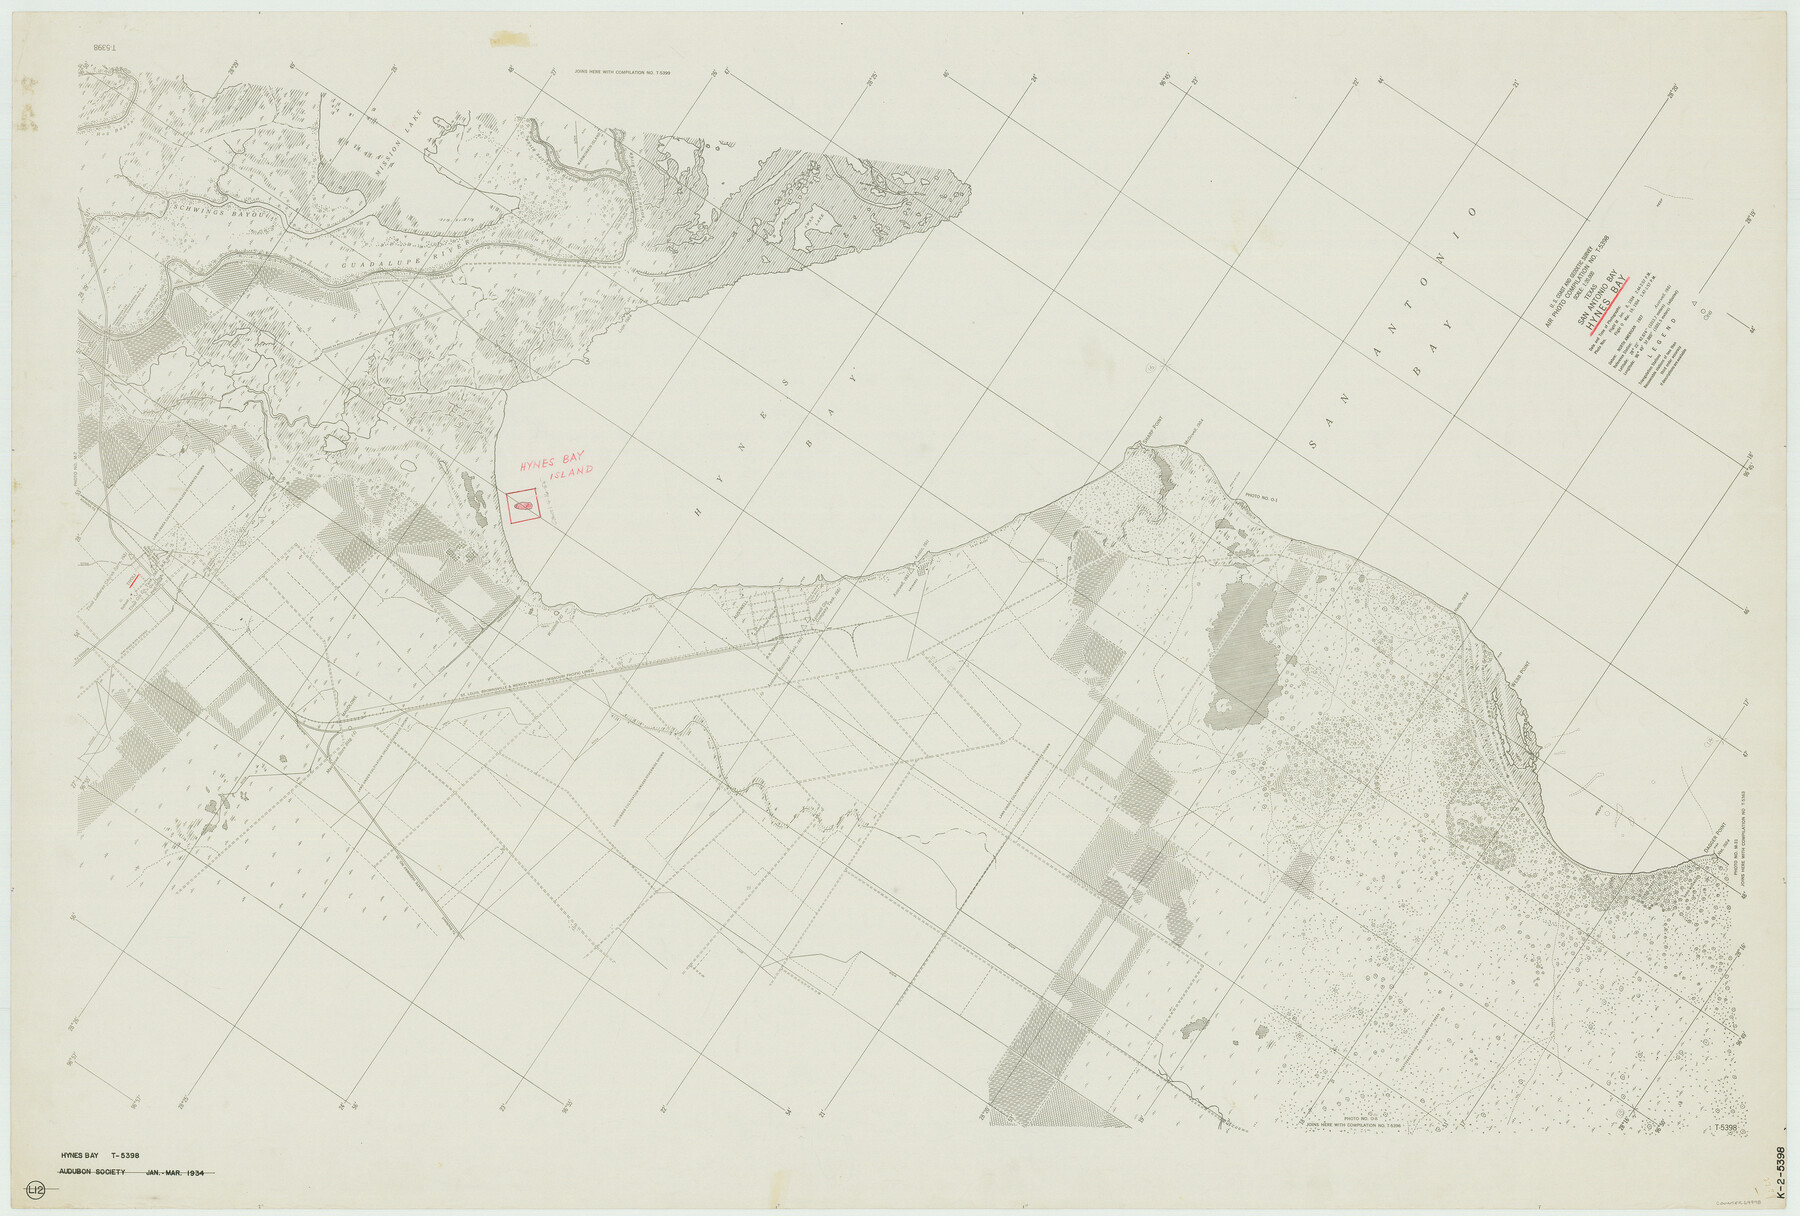 69998, Texas, San Antonio Bay, Hynes Bay, General Map Collection